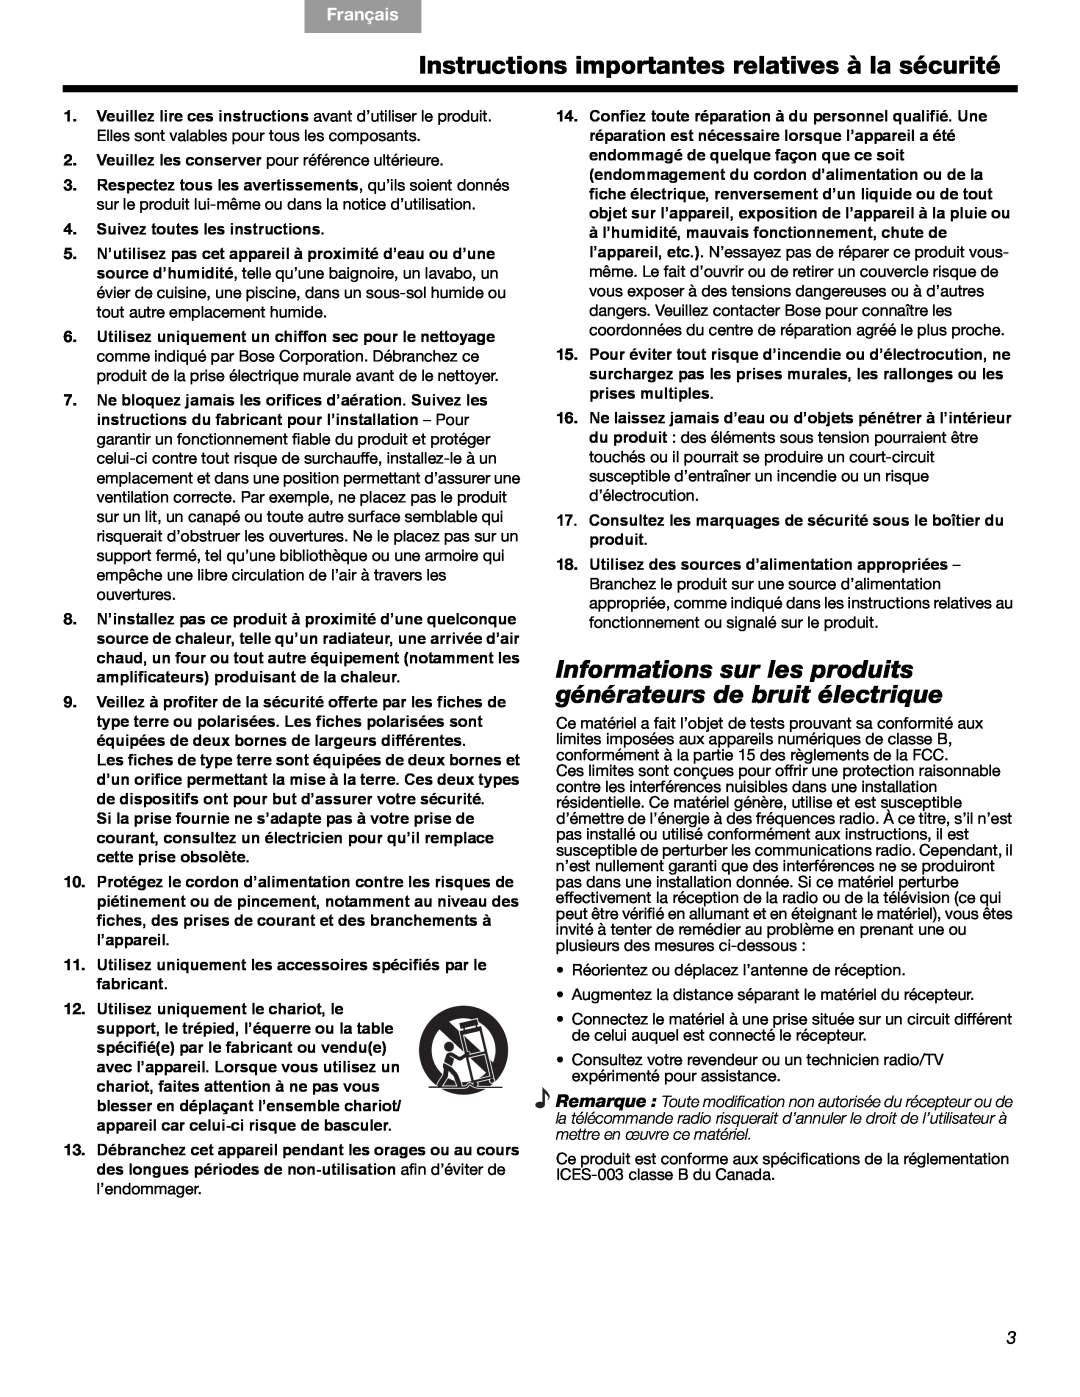 Bose 3 manual Instructions importantes relatives à la sécurité, English Español, Français 